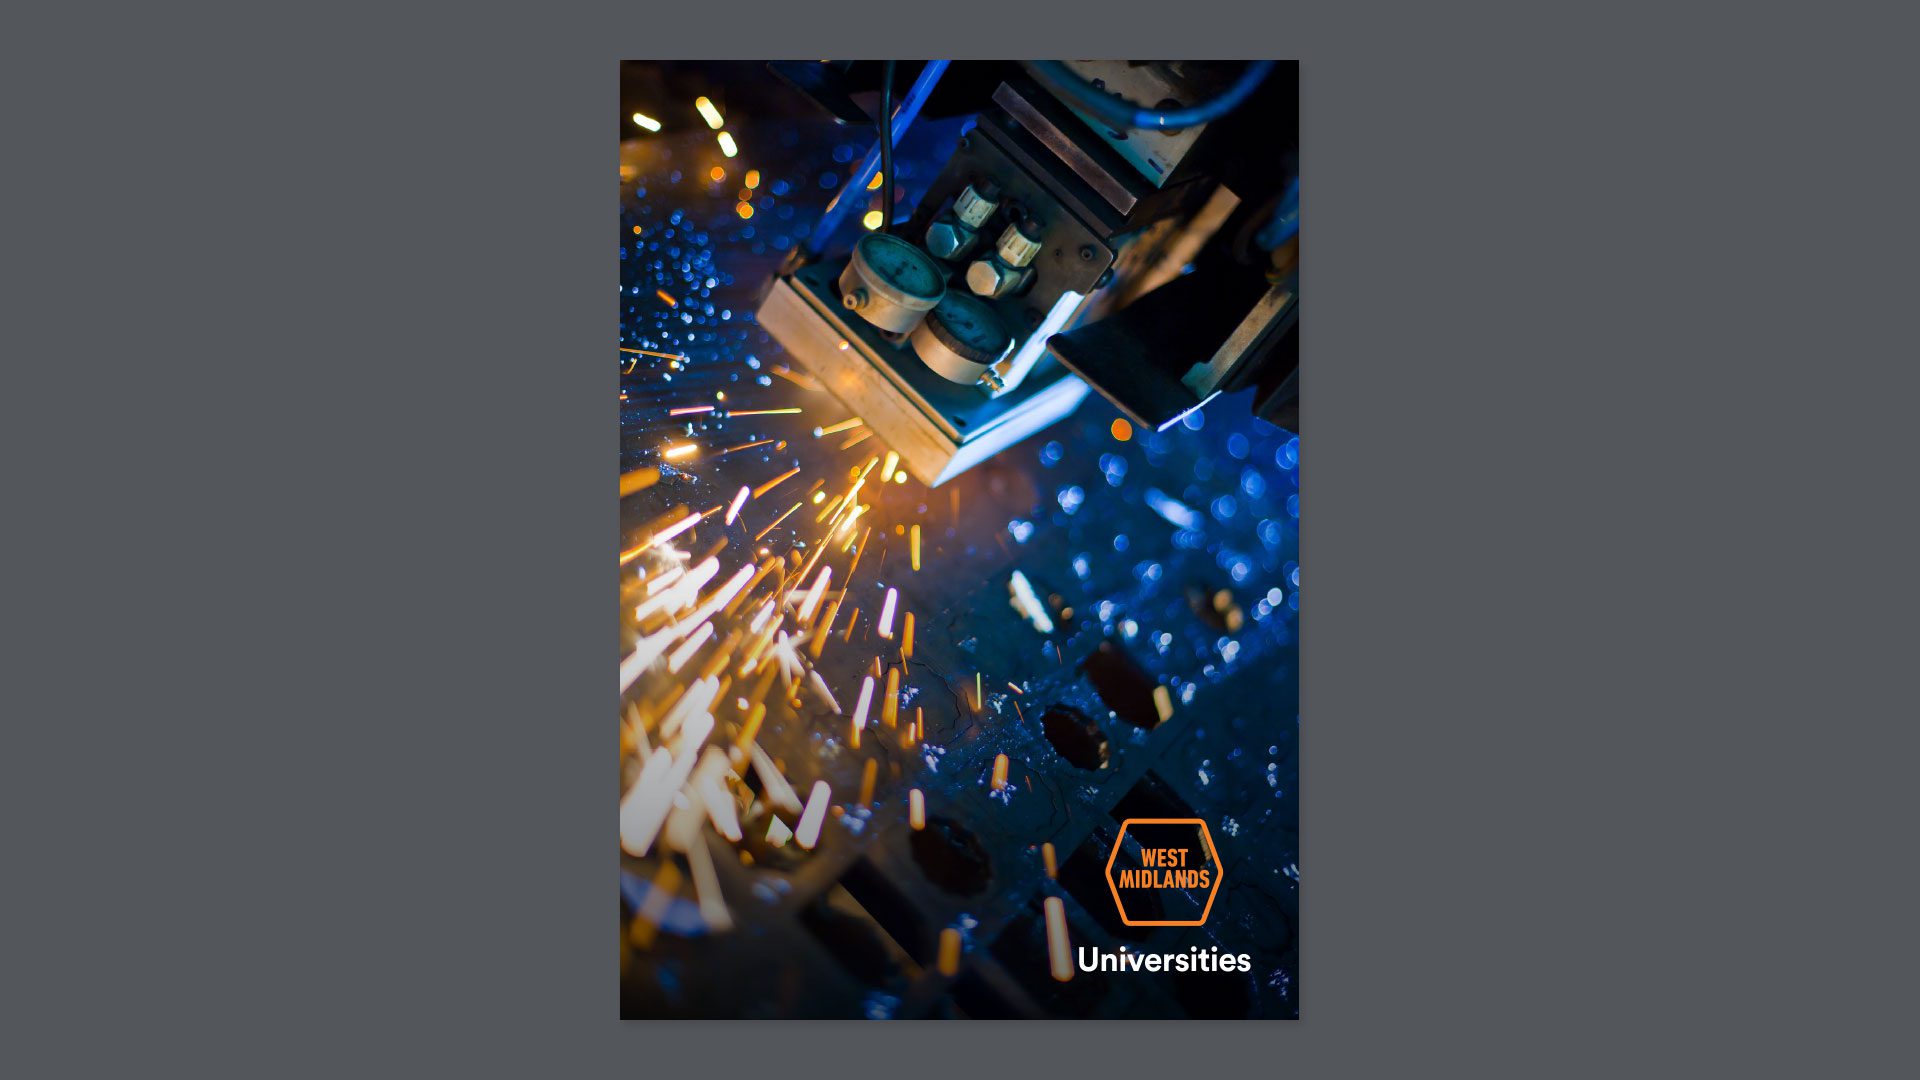 'West Midlands Universities' brochure cover.